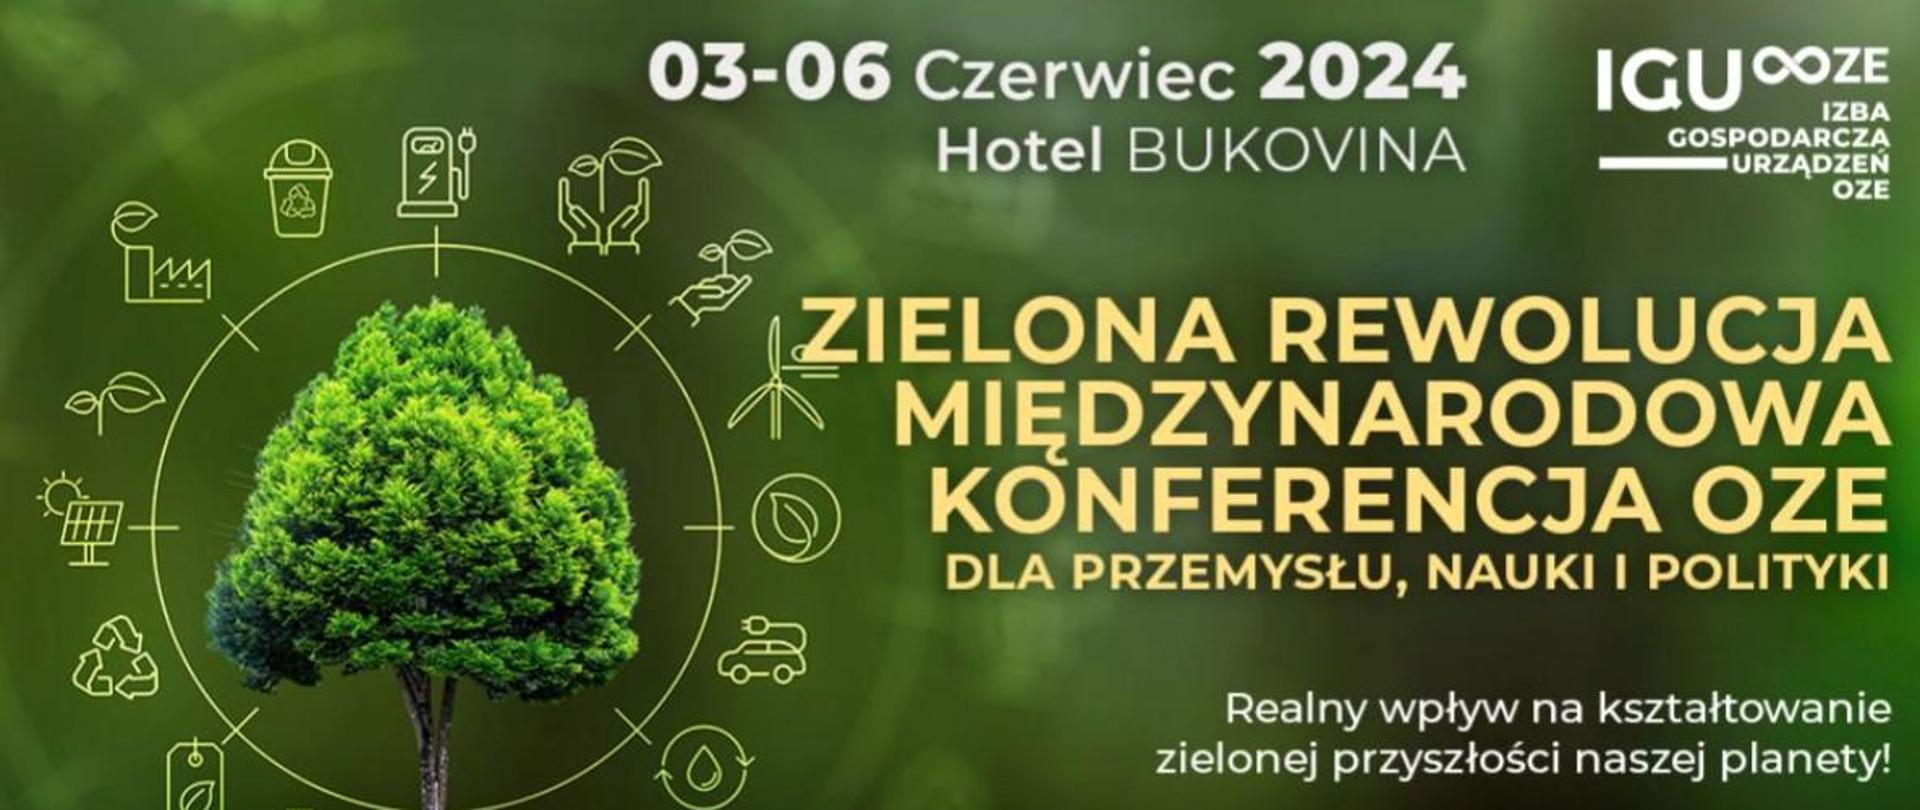 Zielona Rewolucja Międzynarodowa Konferencja OZE dla przemysłu, nauki polityki. Plakat informacyjny o wydarzeniu odbywającym się od 3 do 6 czerwca 2024 roku w Hotelu Bukovina